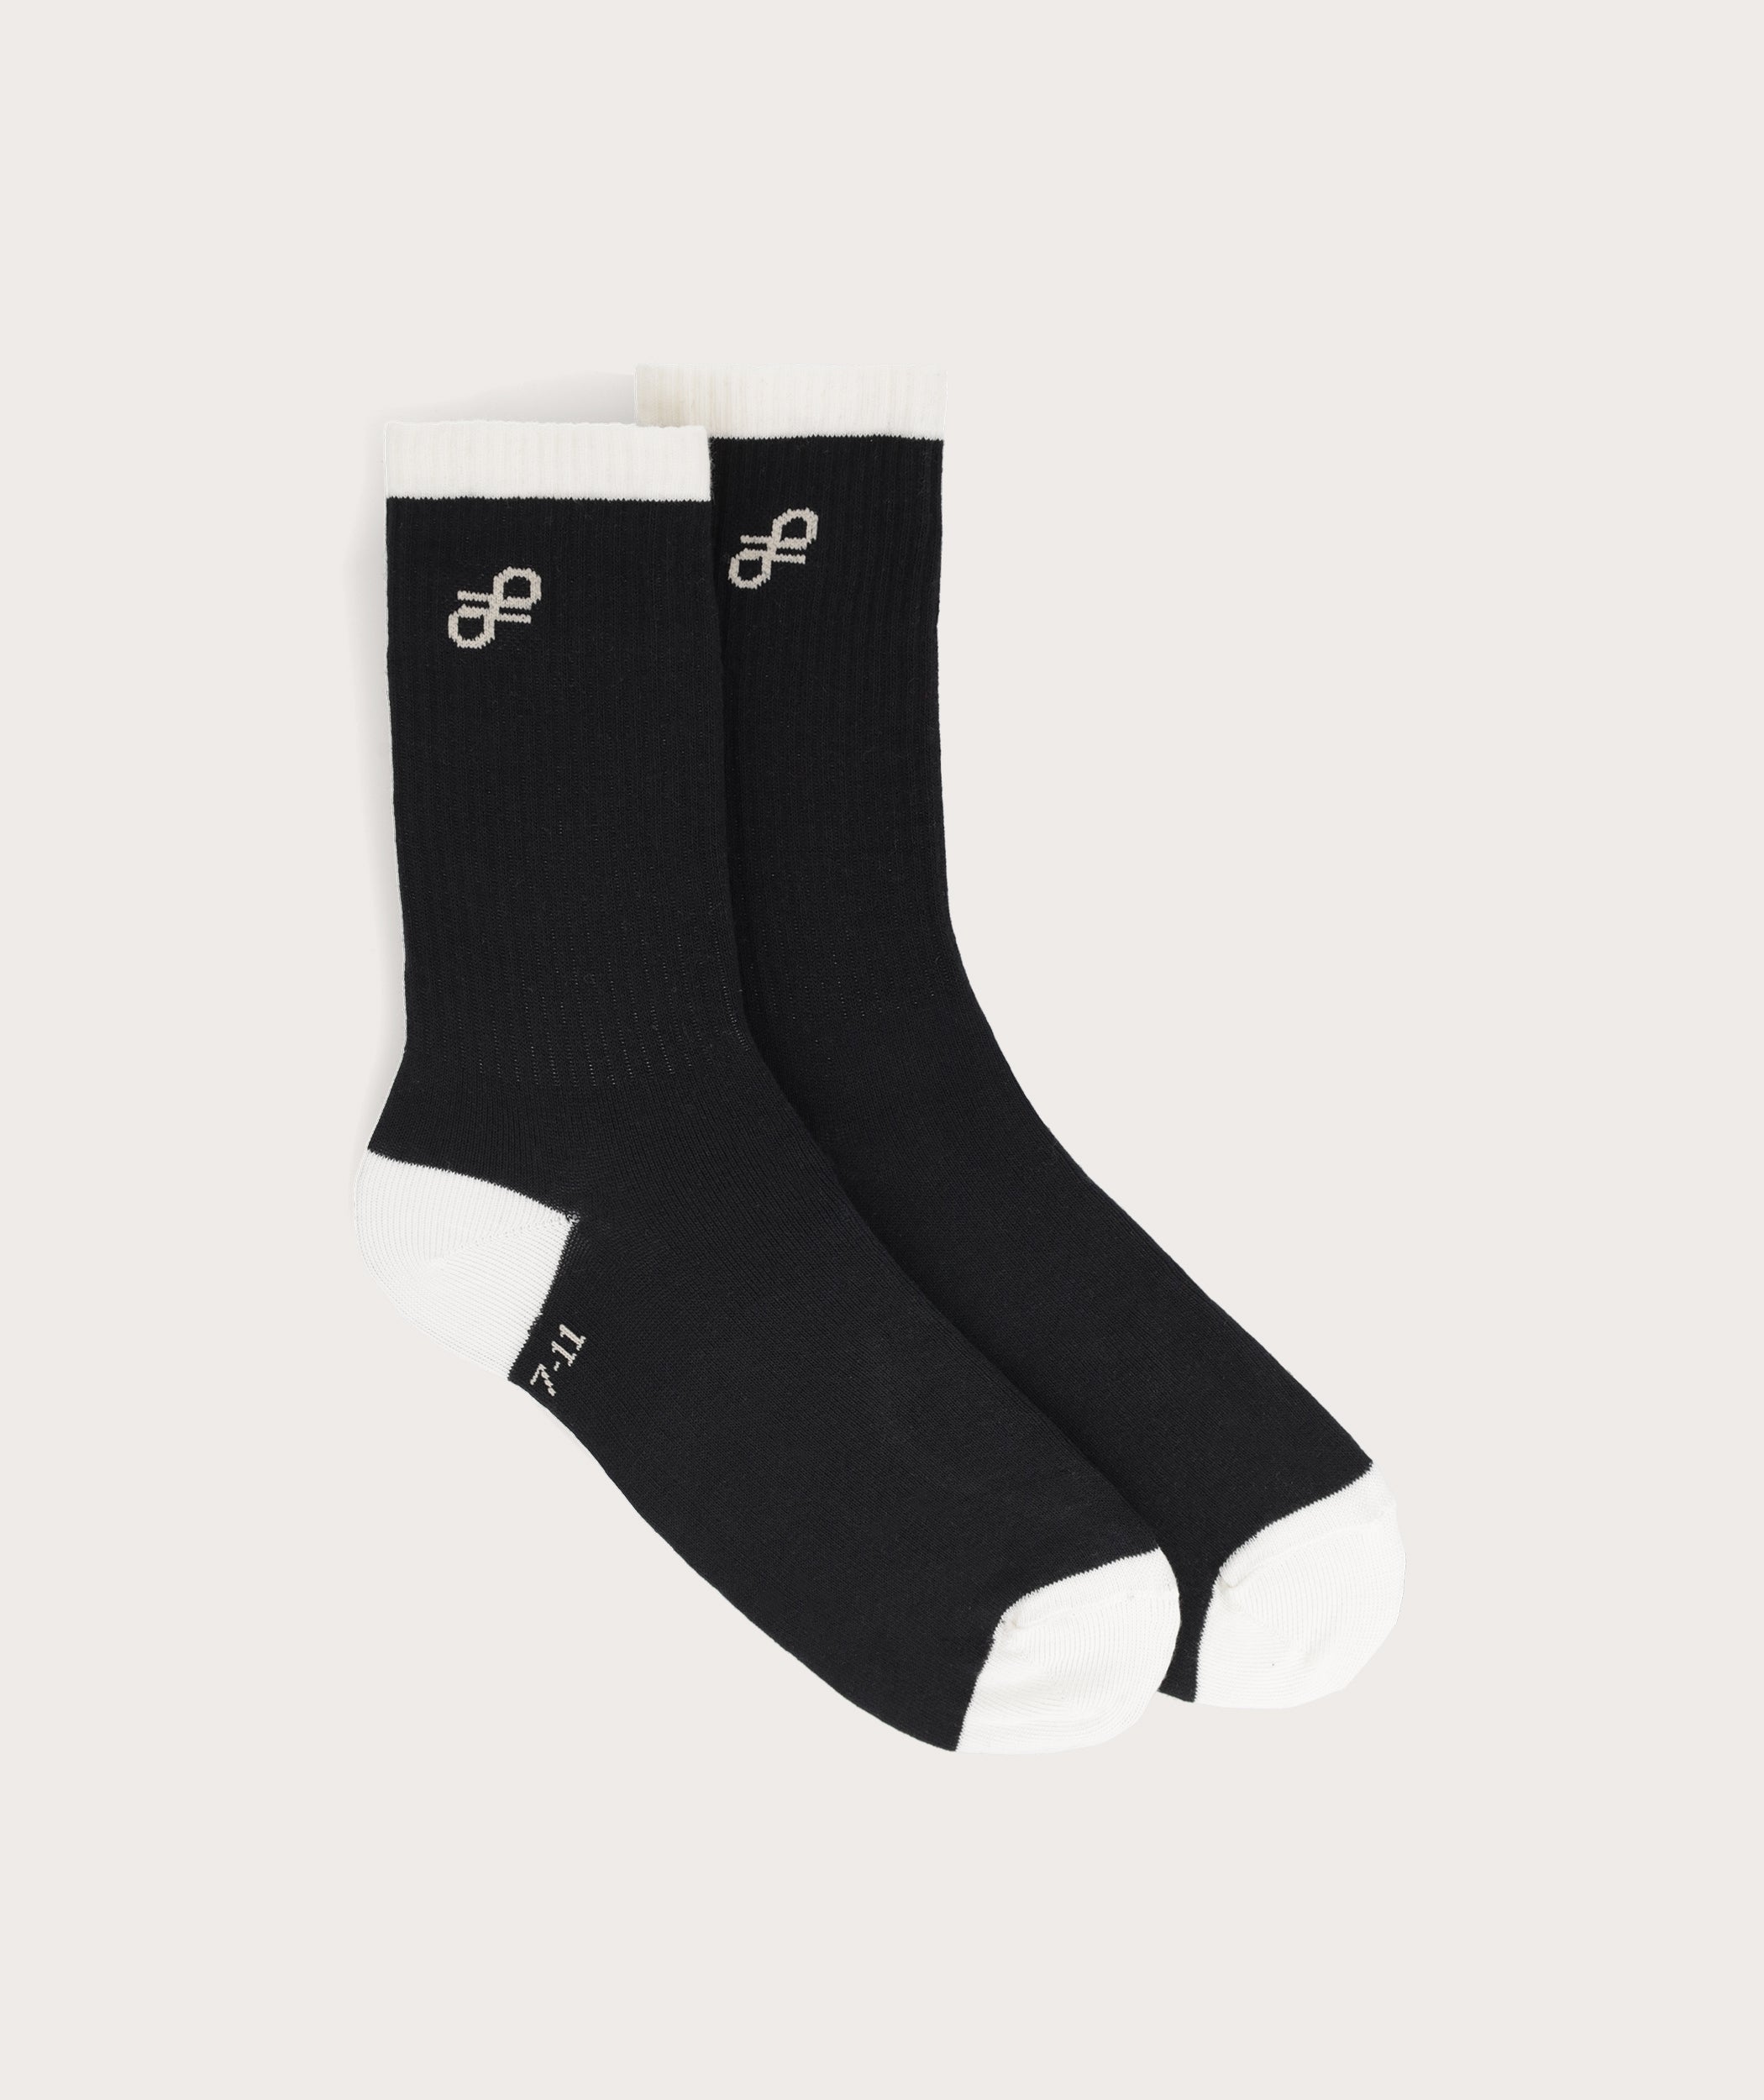 Socks FOM Crew Twin Pack - Khaki & Black Knot (Size 7-11)